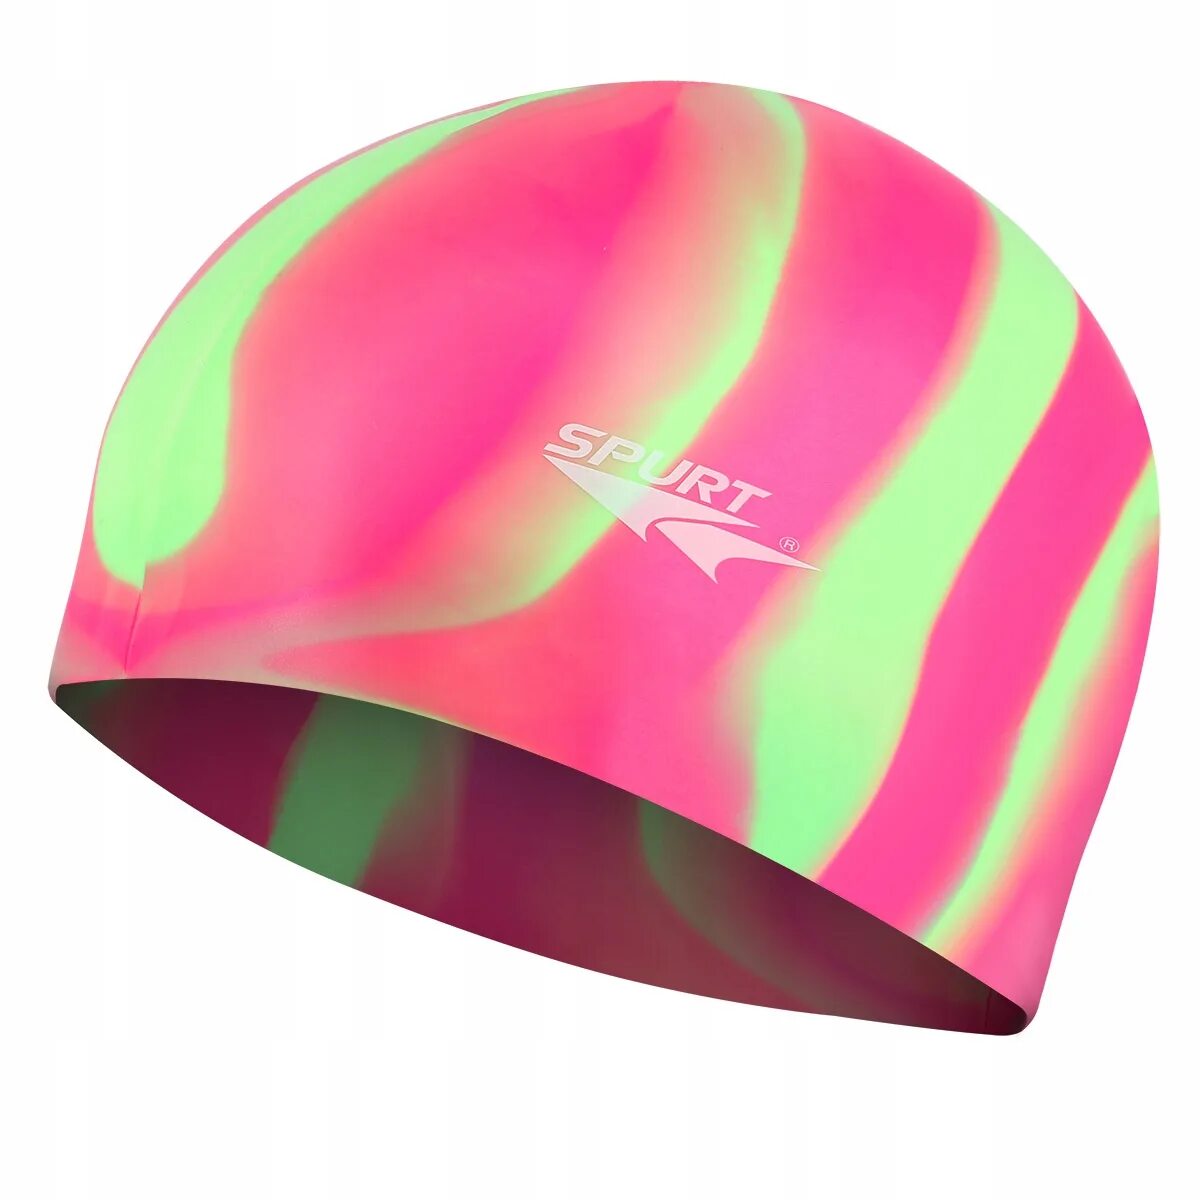 Speedo fastskin3 шапочка. Силиконовая шапочка для бассейна. Шапка разноцветная для купания. Стильные шапочки для плавания силиконовые. Кепка зебры